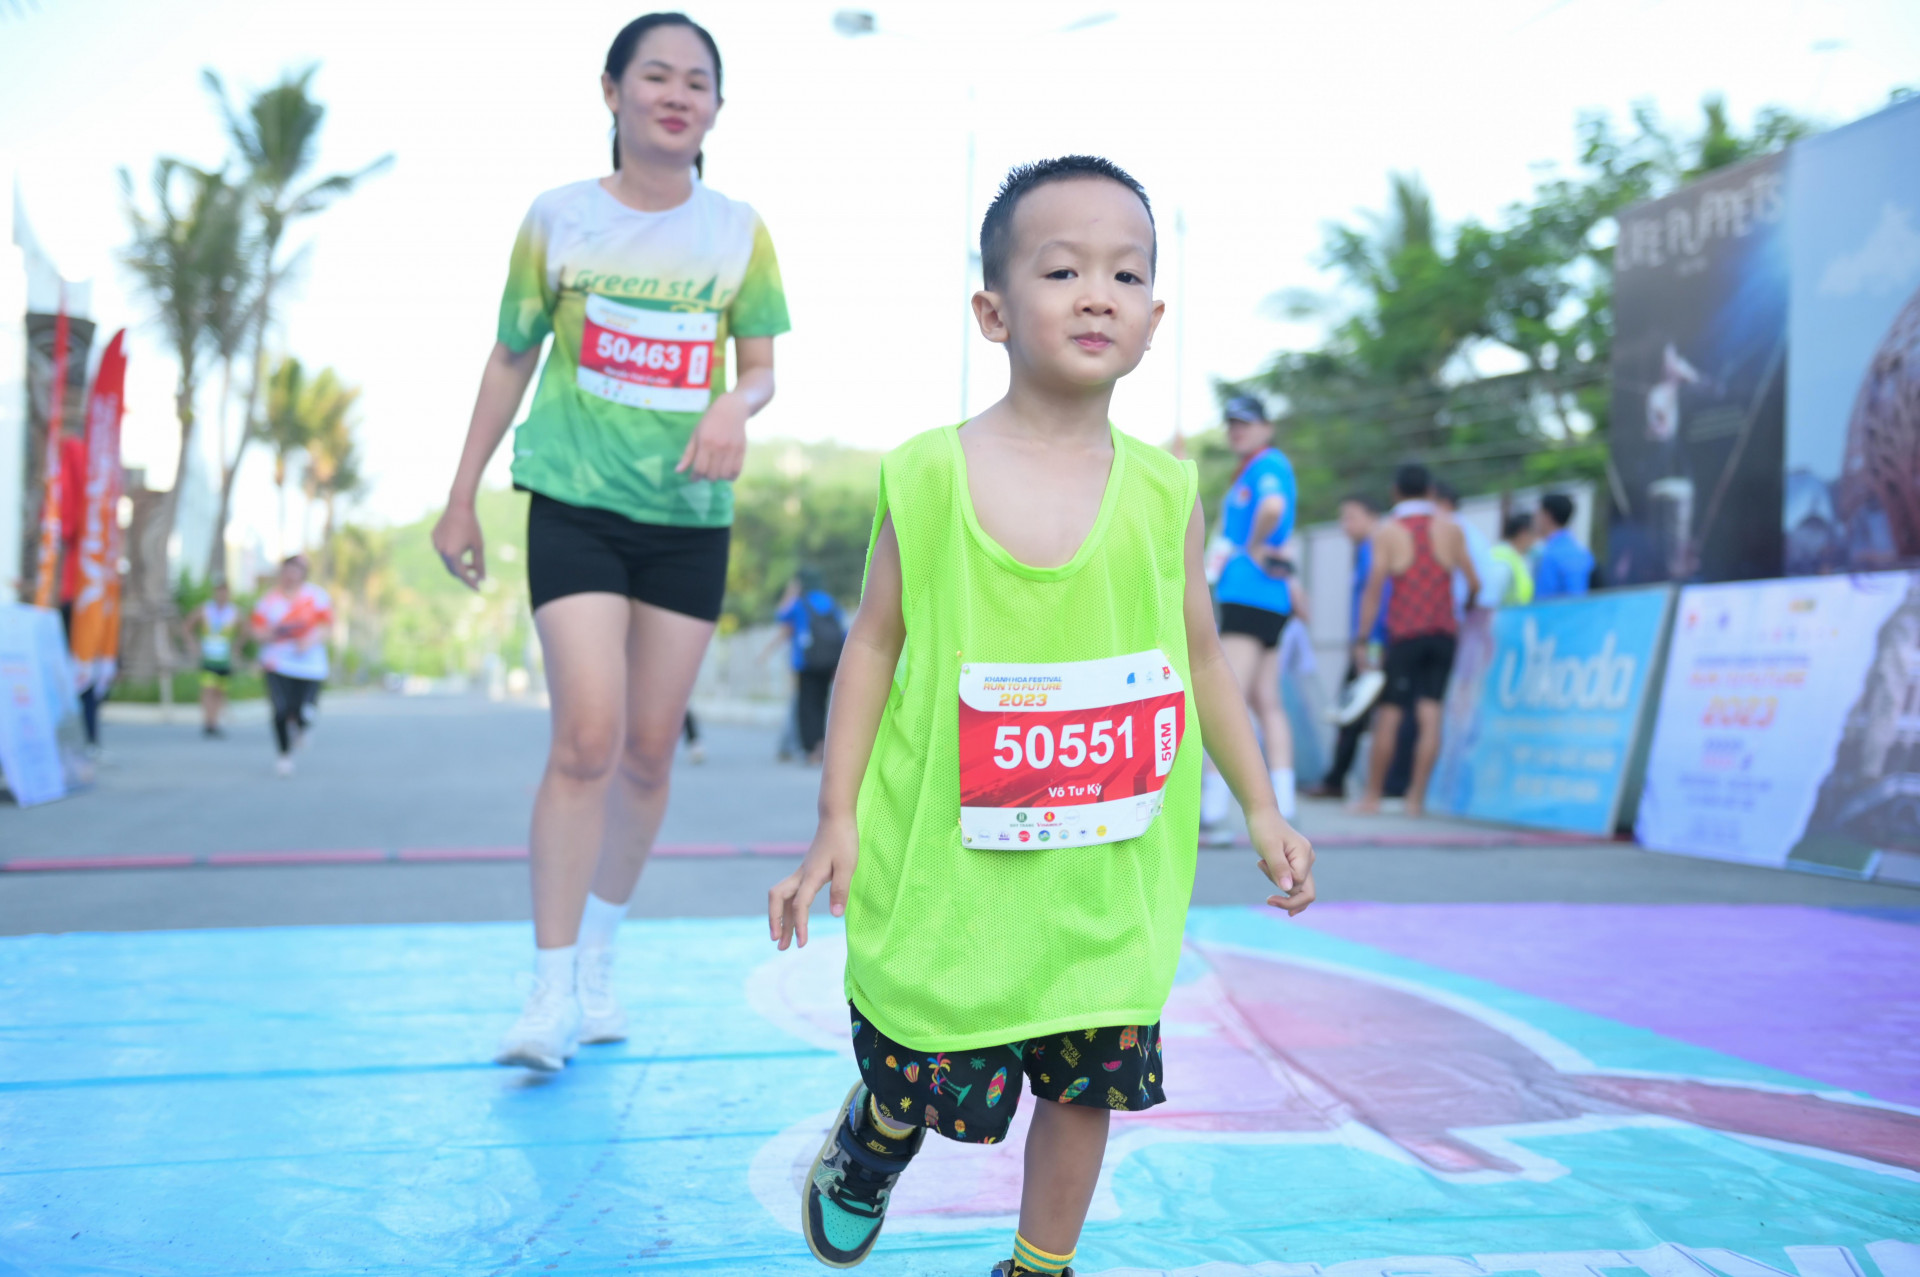 Chân chạy nhỏ tuổi nhất giải (4 tuổi) hoàn thành cự ly 5km.